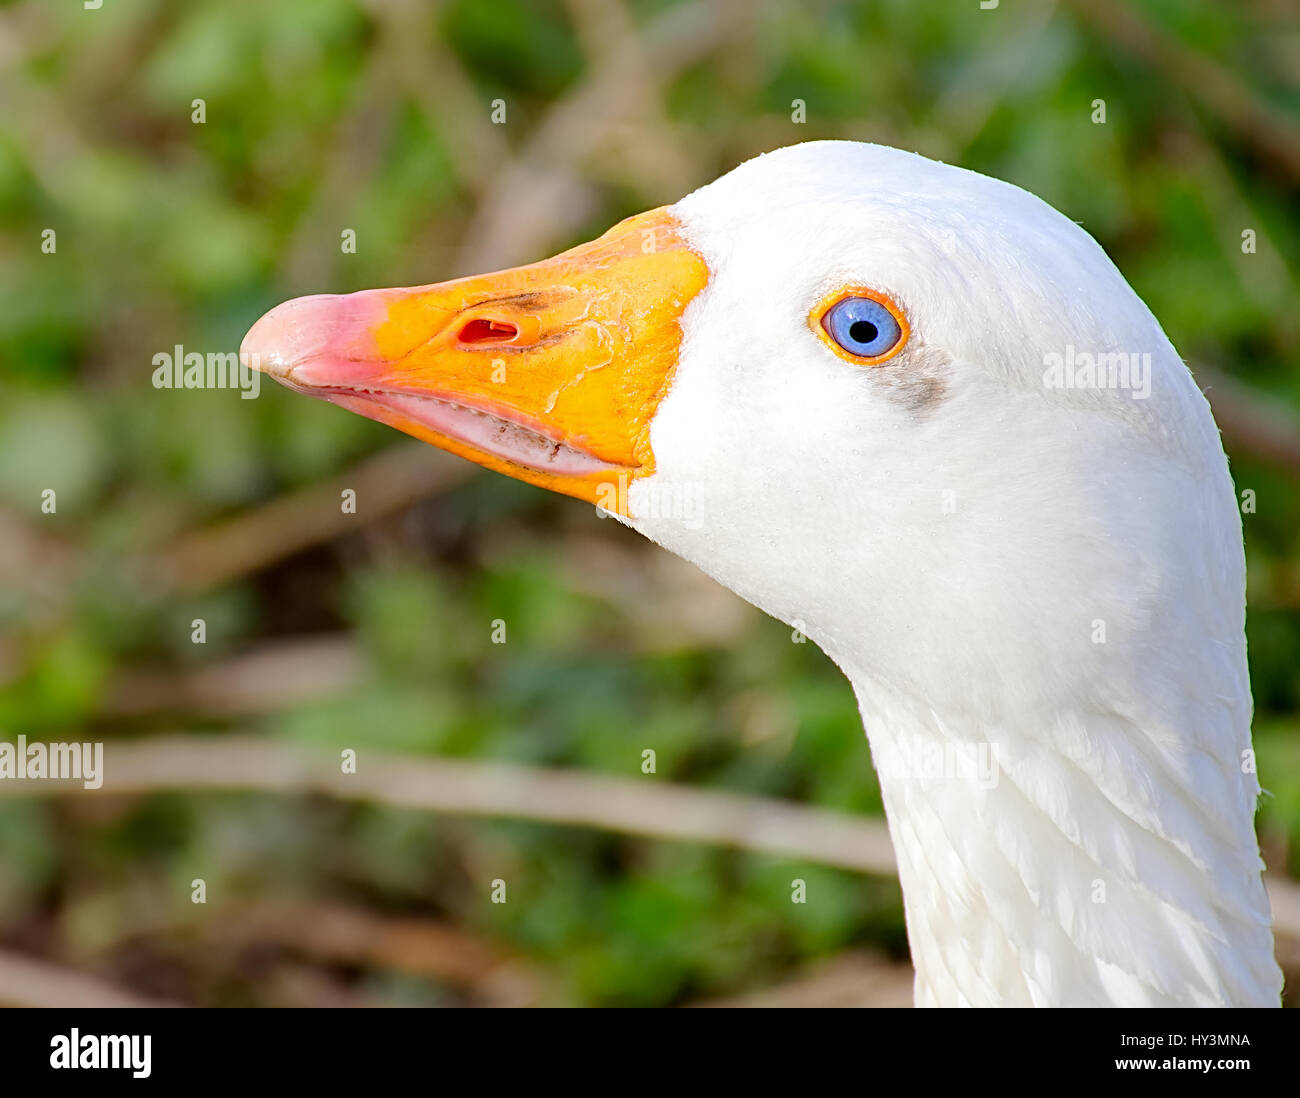 Oca naturale con gli occhi blu,close up,Westport lago riserva di uccelli vicino a Stoke on Trent, Staffordshire, Regno Unito. Foto Stock